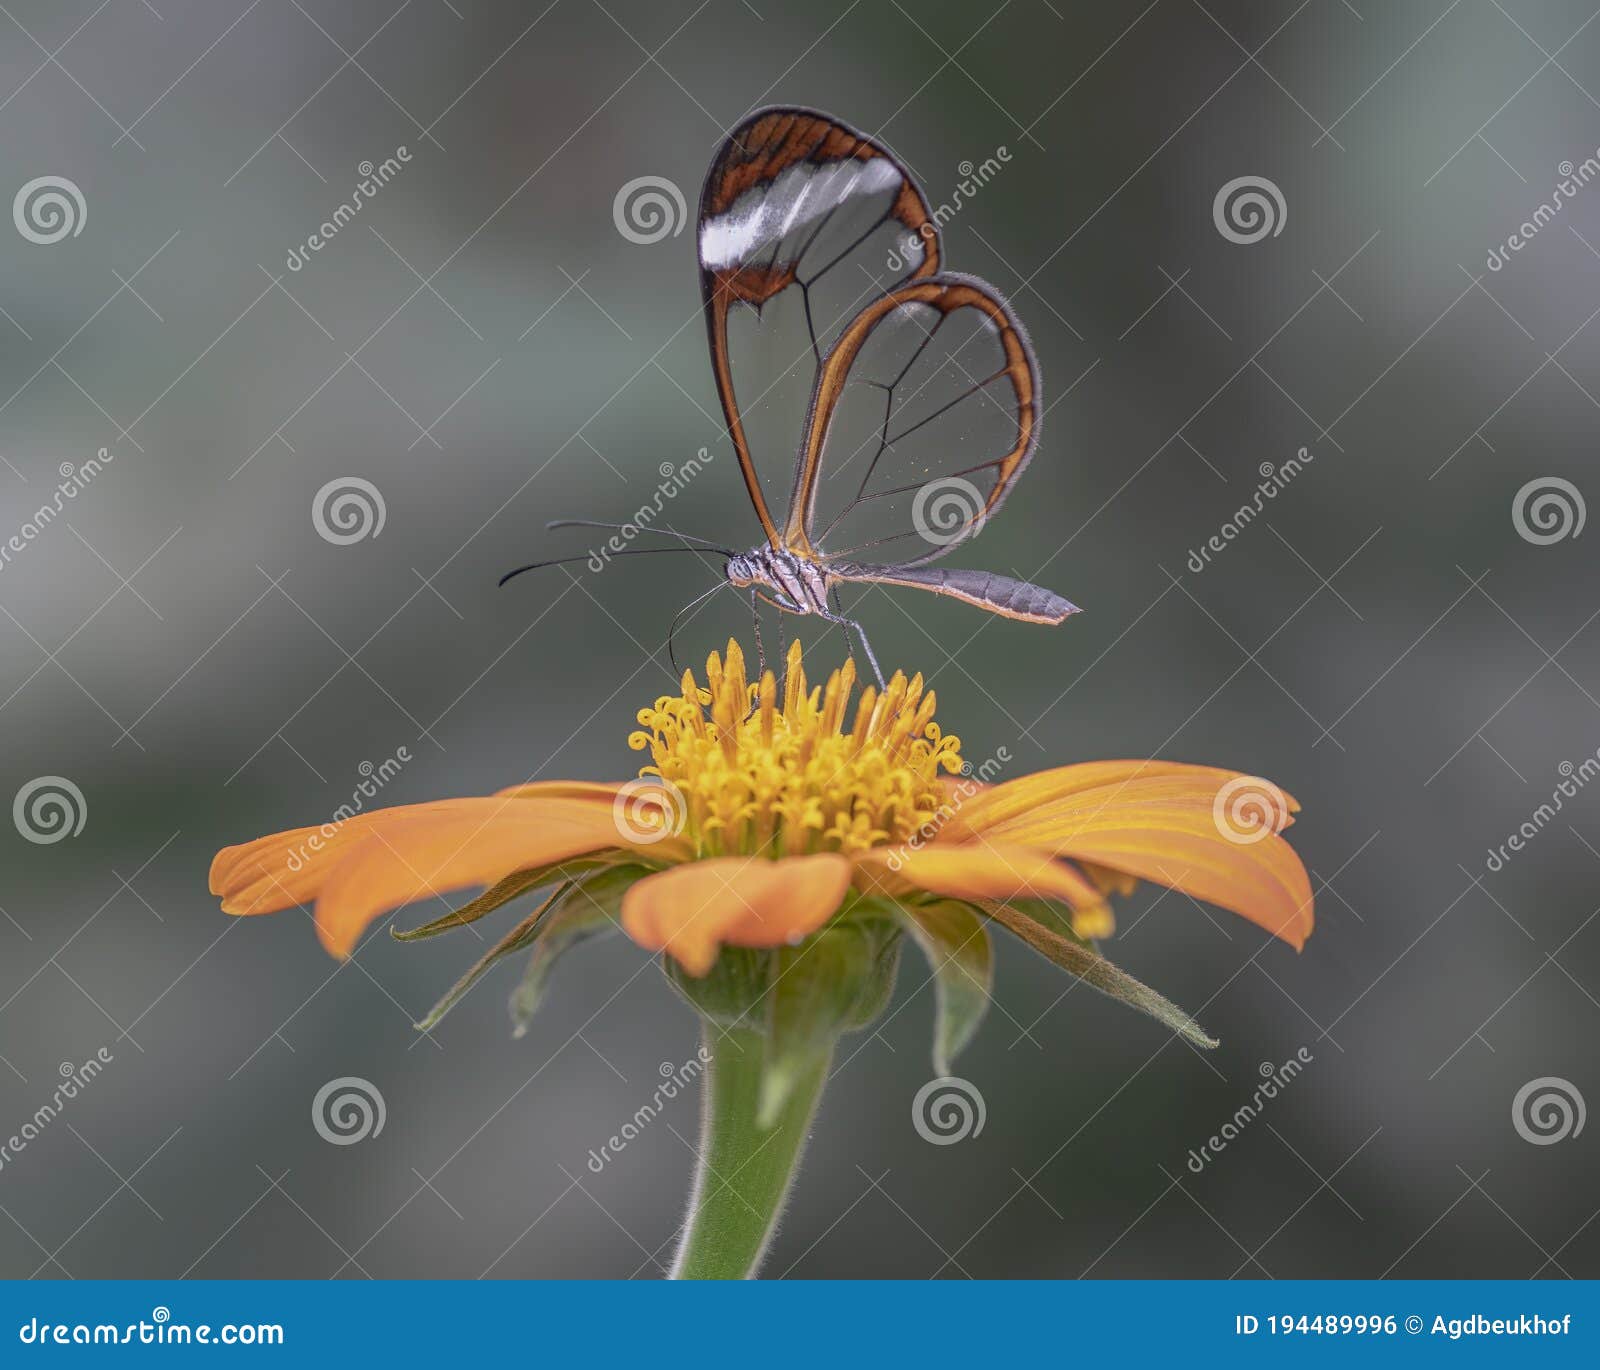 beautiful glasswing butterfly greta oto on a beautiful orange flower gerbera in a summer garden.